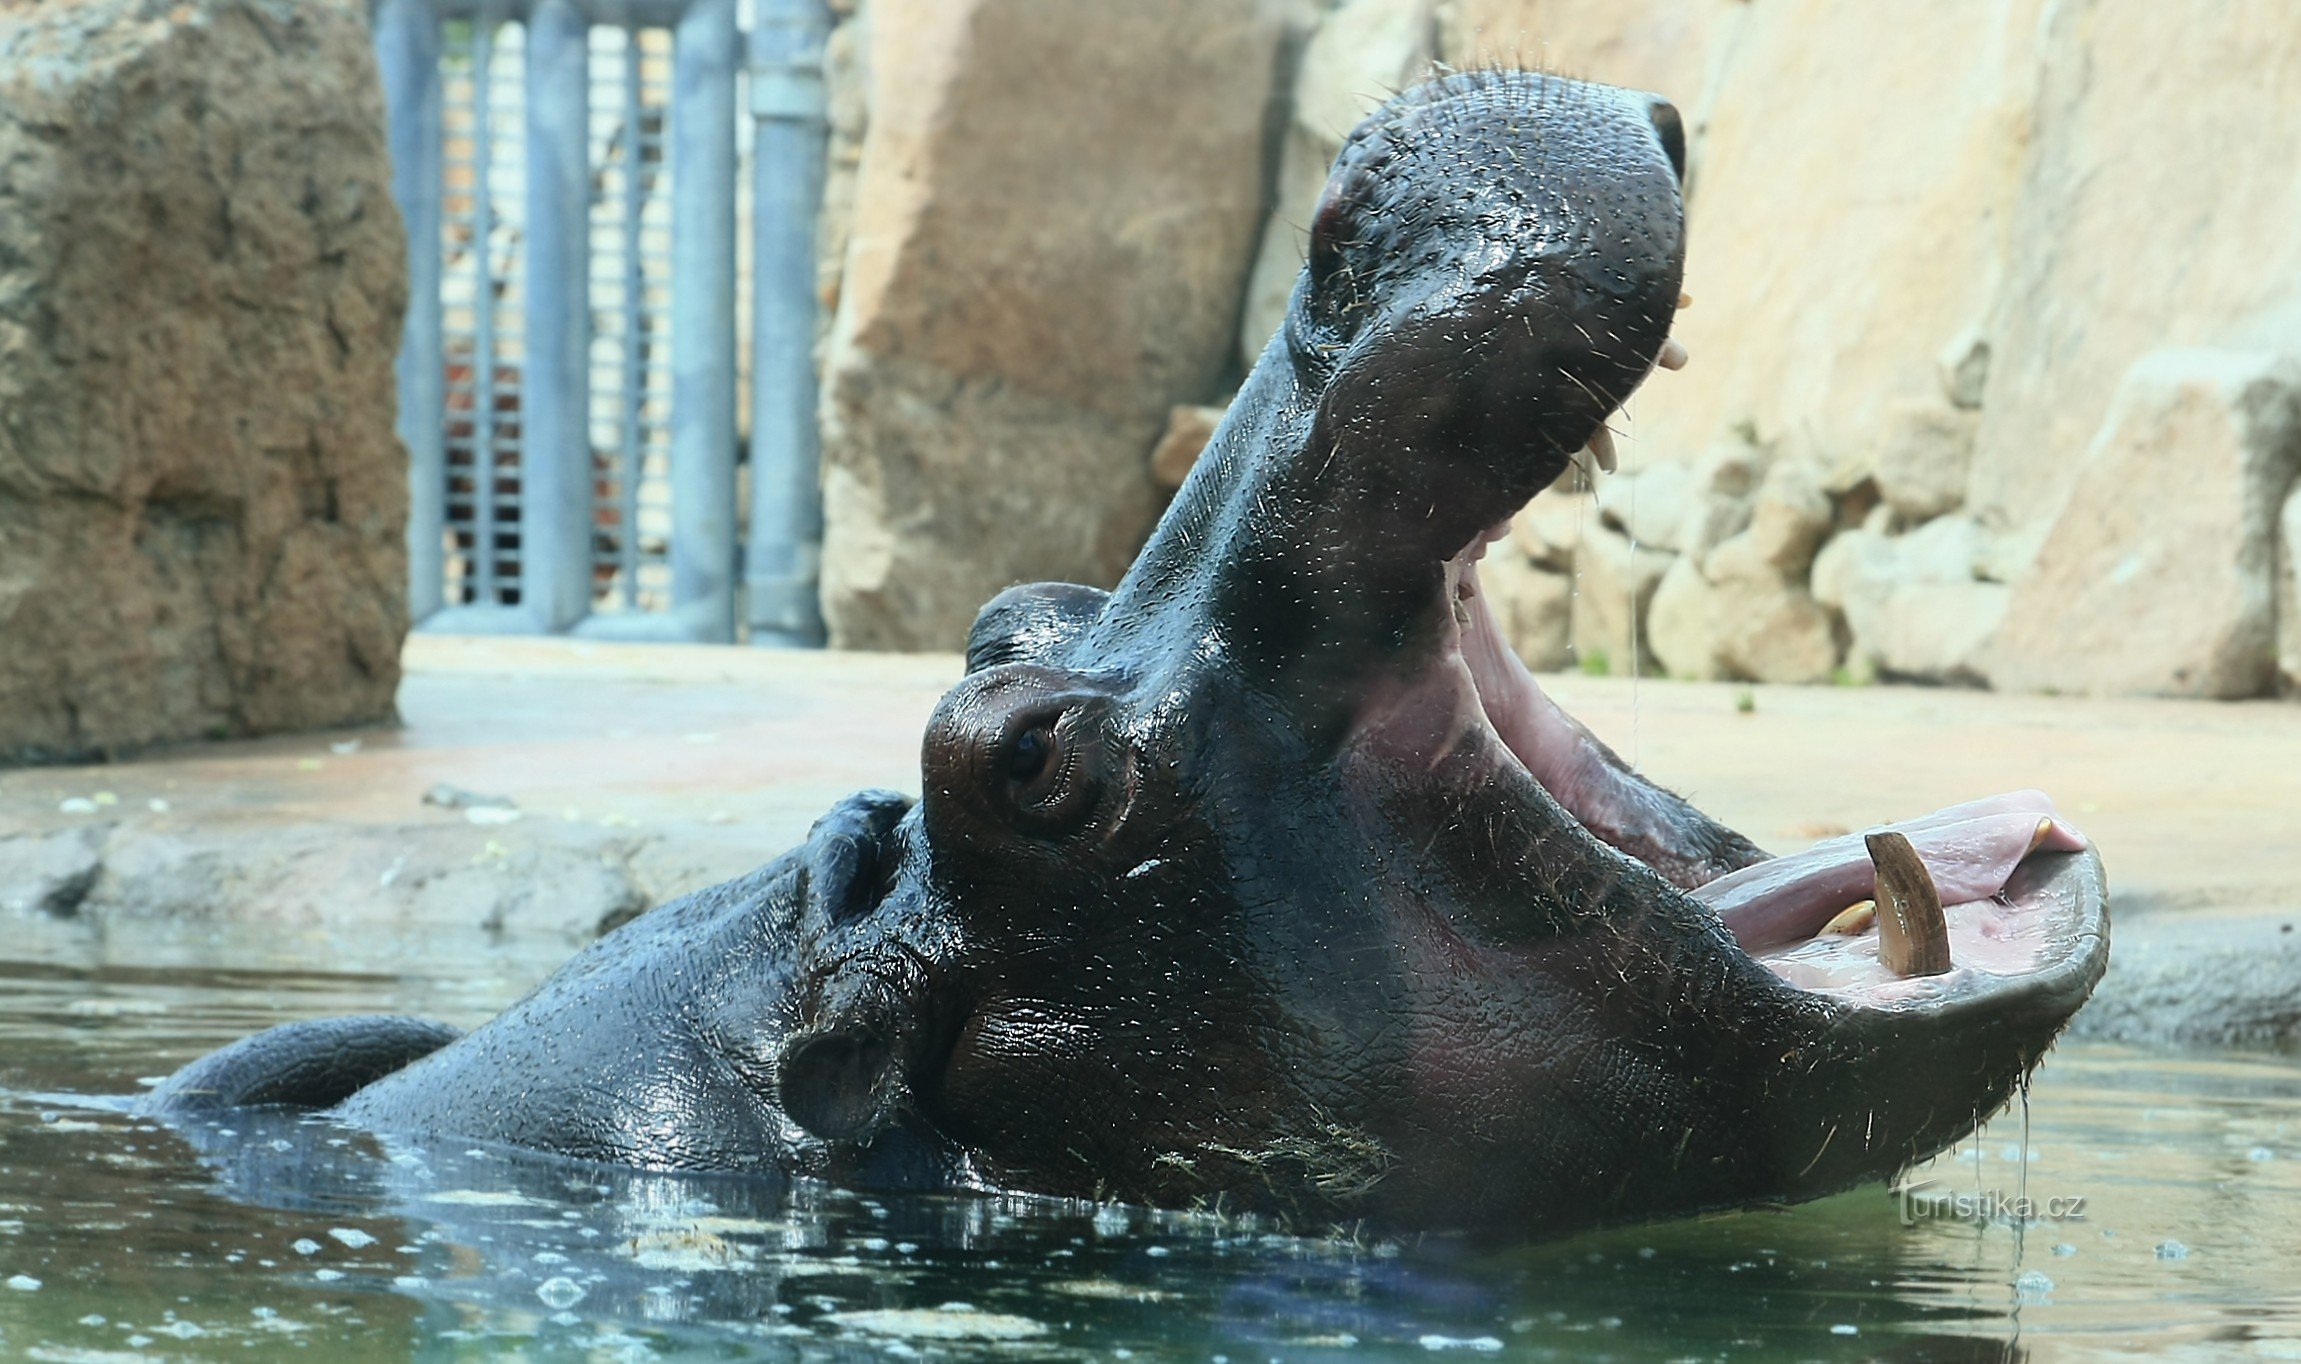 ZOO Praga Troja 2014 - hipopotam za szkłem